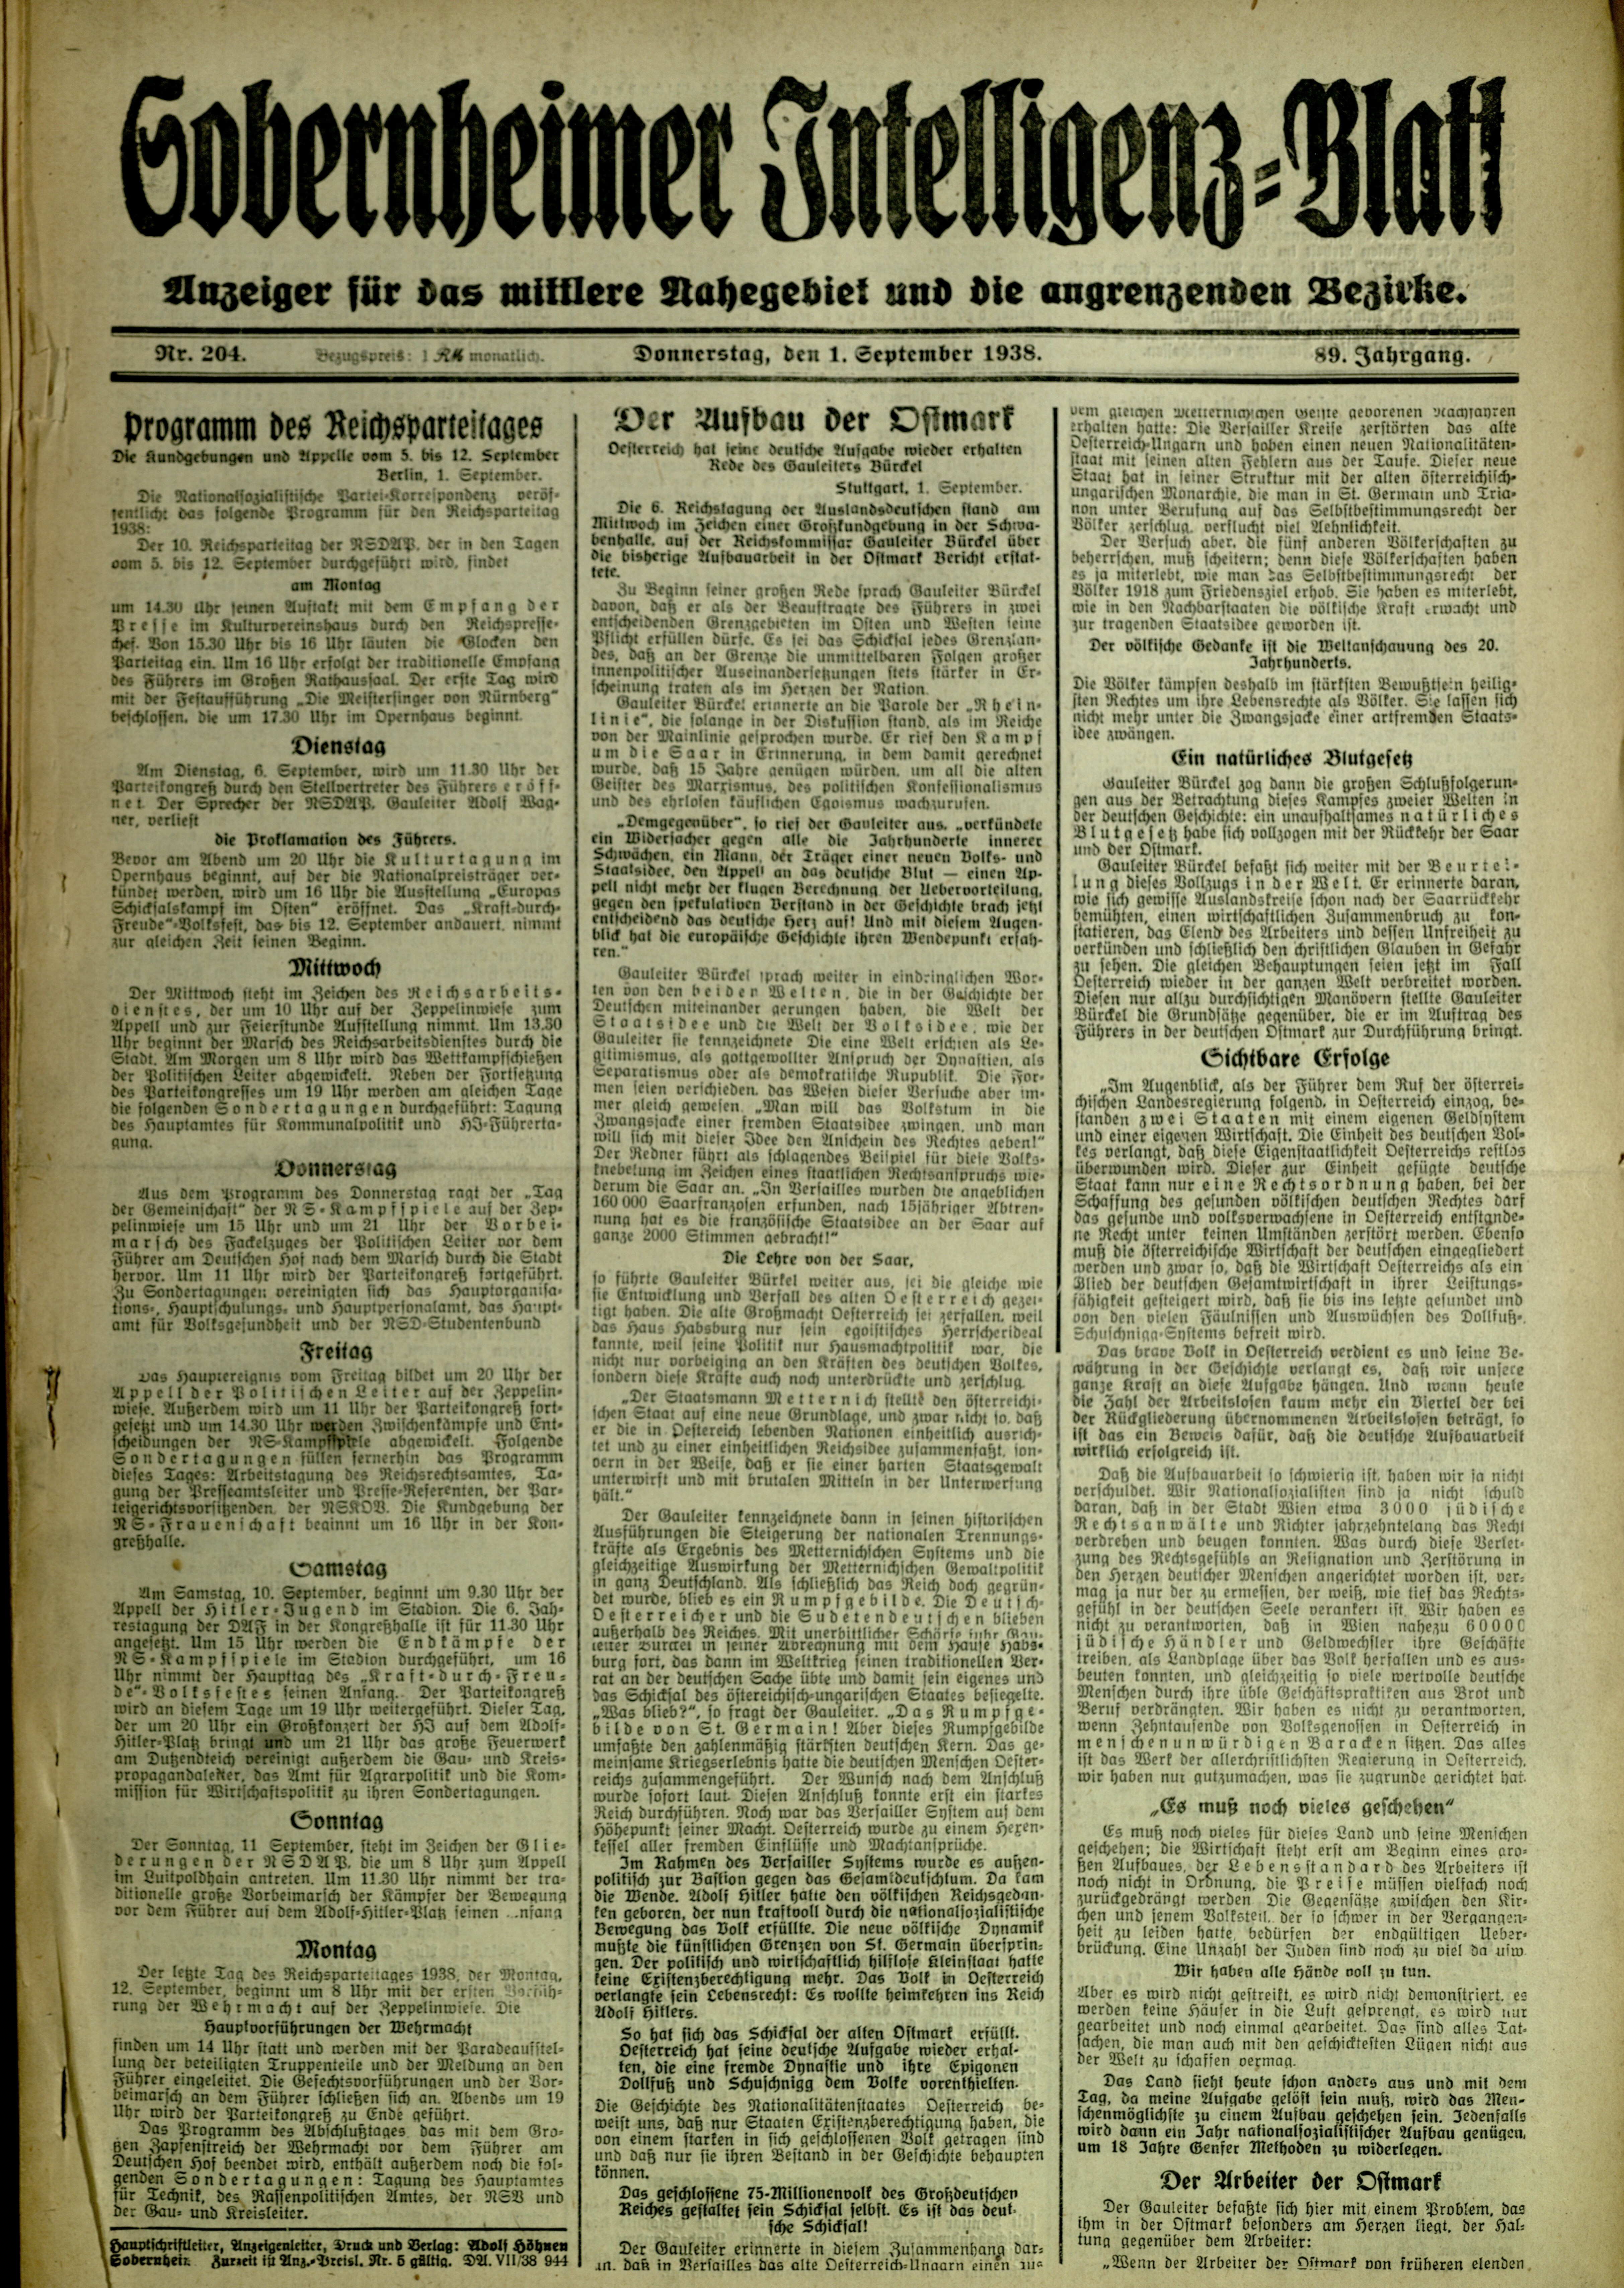 Zeitung: Sobernheimer Intelligenzblatt; September 1938, Jg. 88 Nr. 204 (Heimatmuseum Bad Sobernheim CC BY-NC-SA)